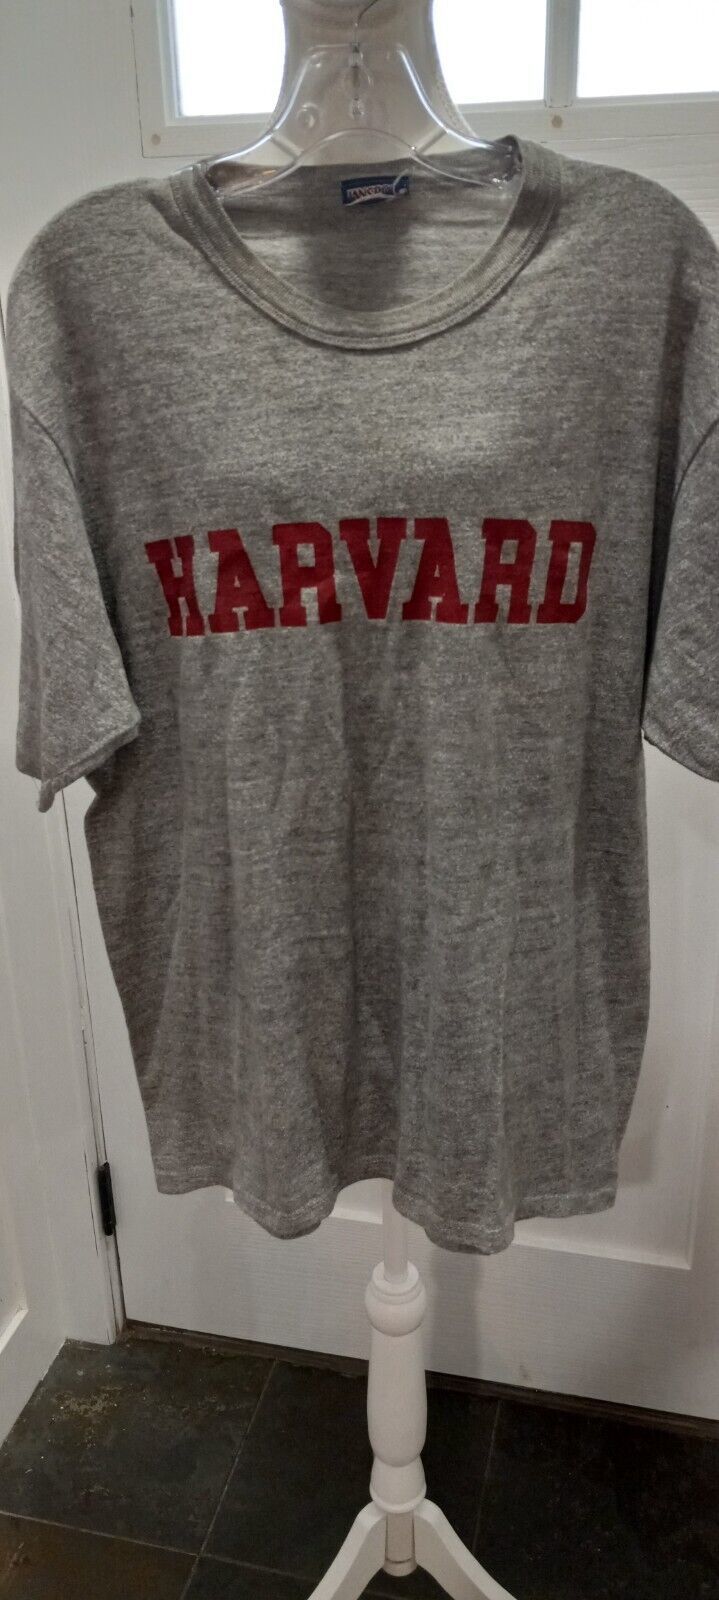 Vintage Jansport Harvard T-Shirt Size Large - $19.99